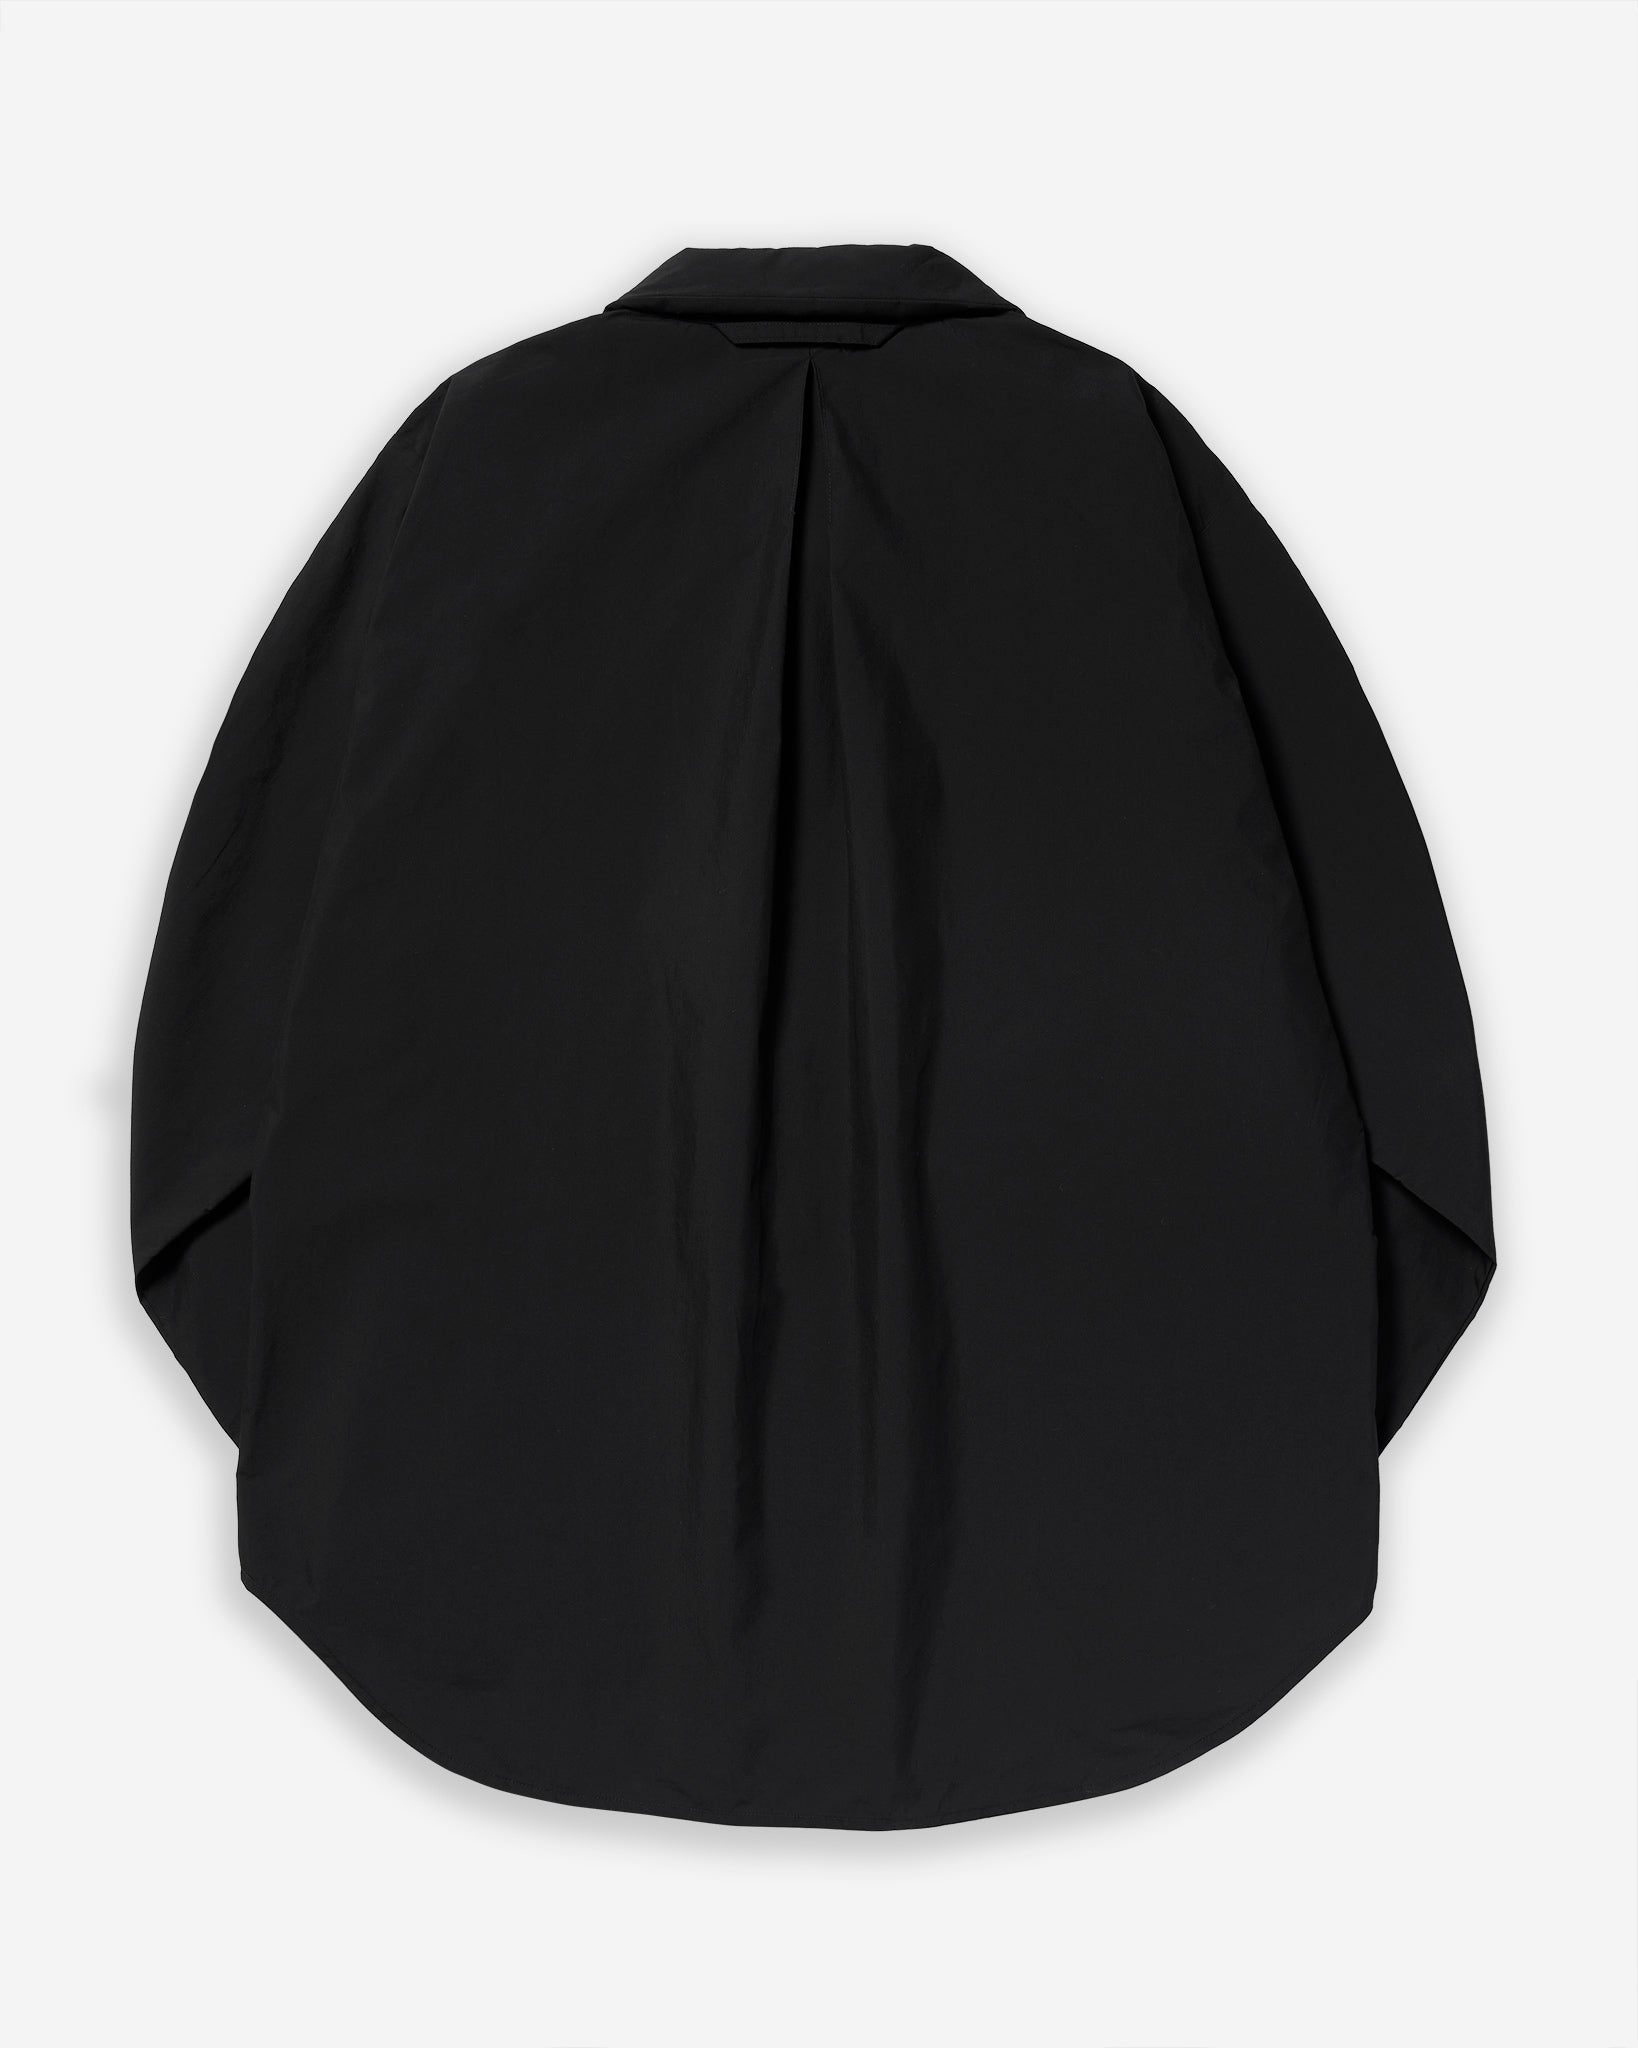 Shirt Jacket (LS-LB01) - Black